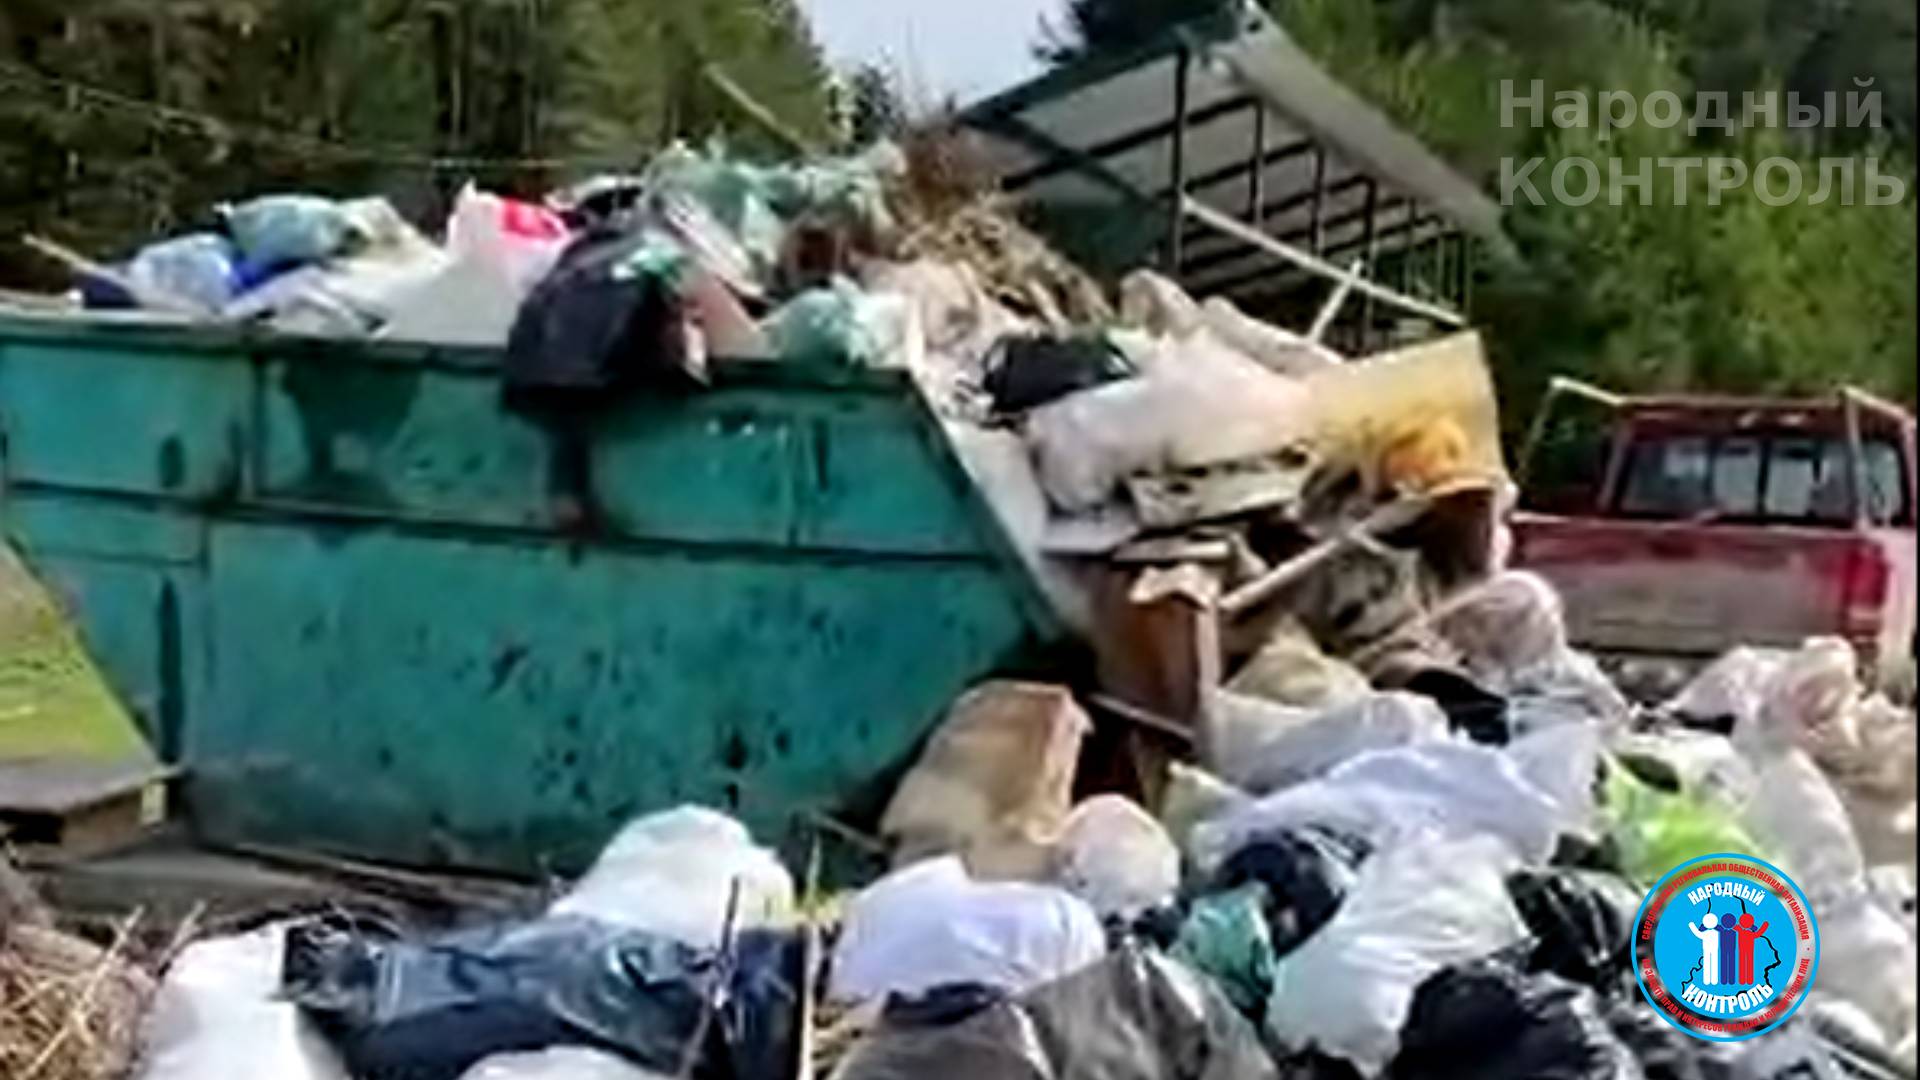 ГО Ревда столкнулся с проблемой невывоза мусора